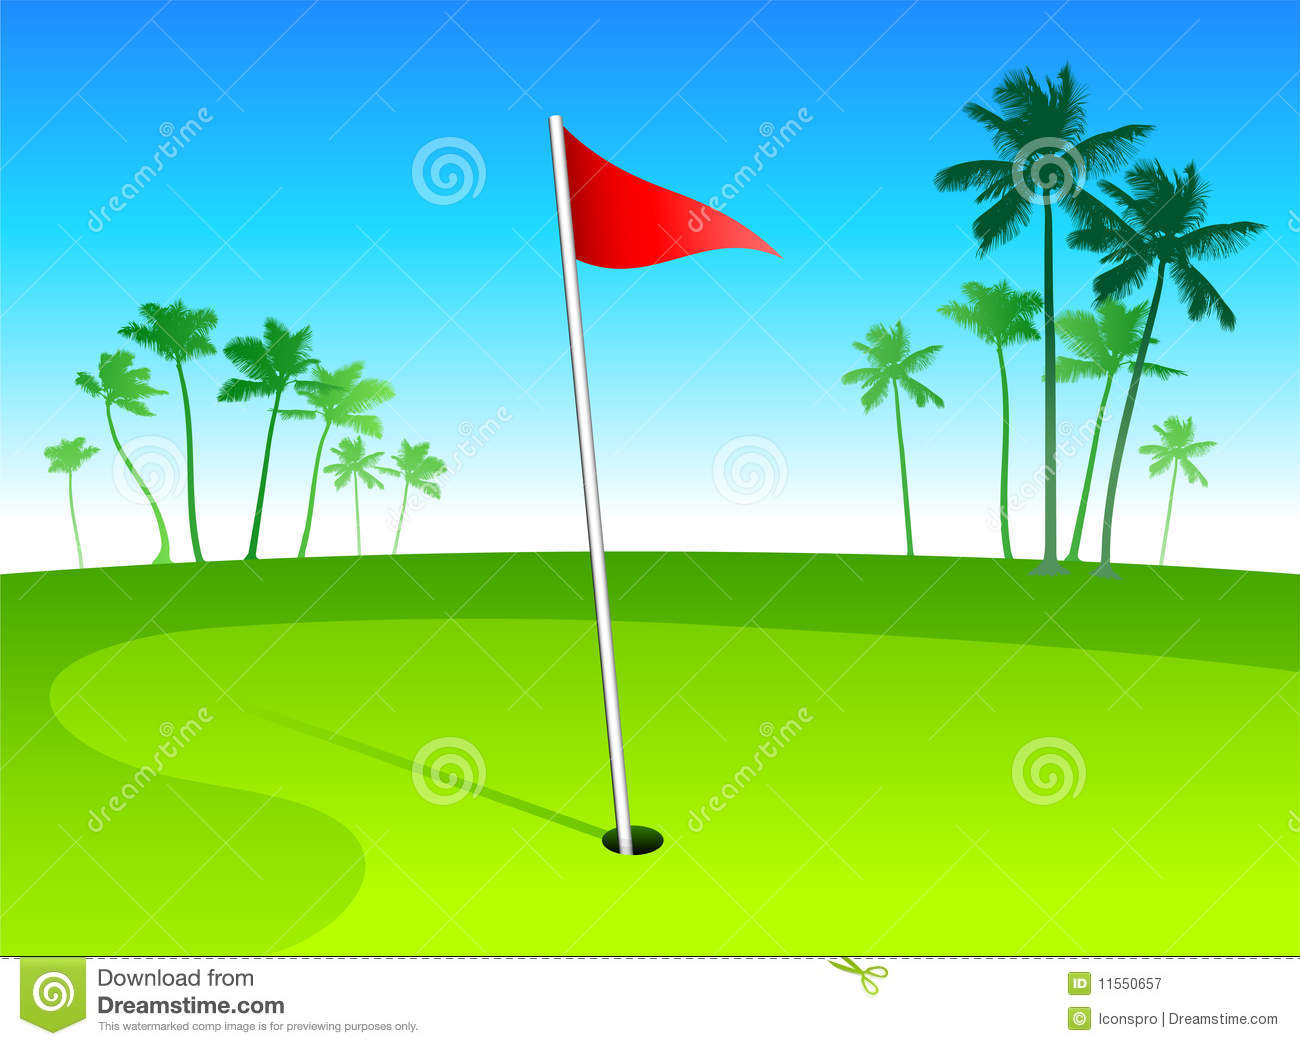 ... Golf Course - Golf ball g